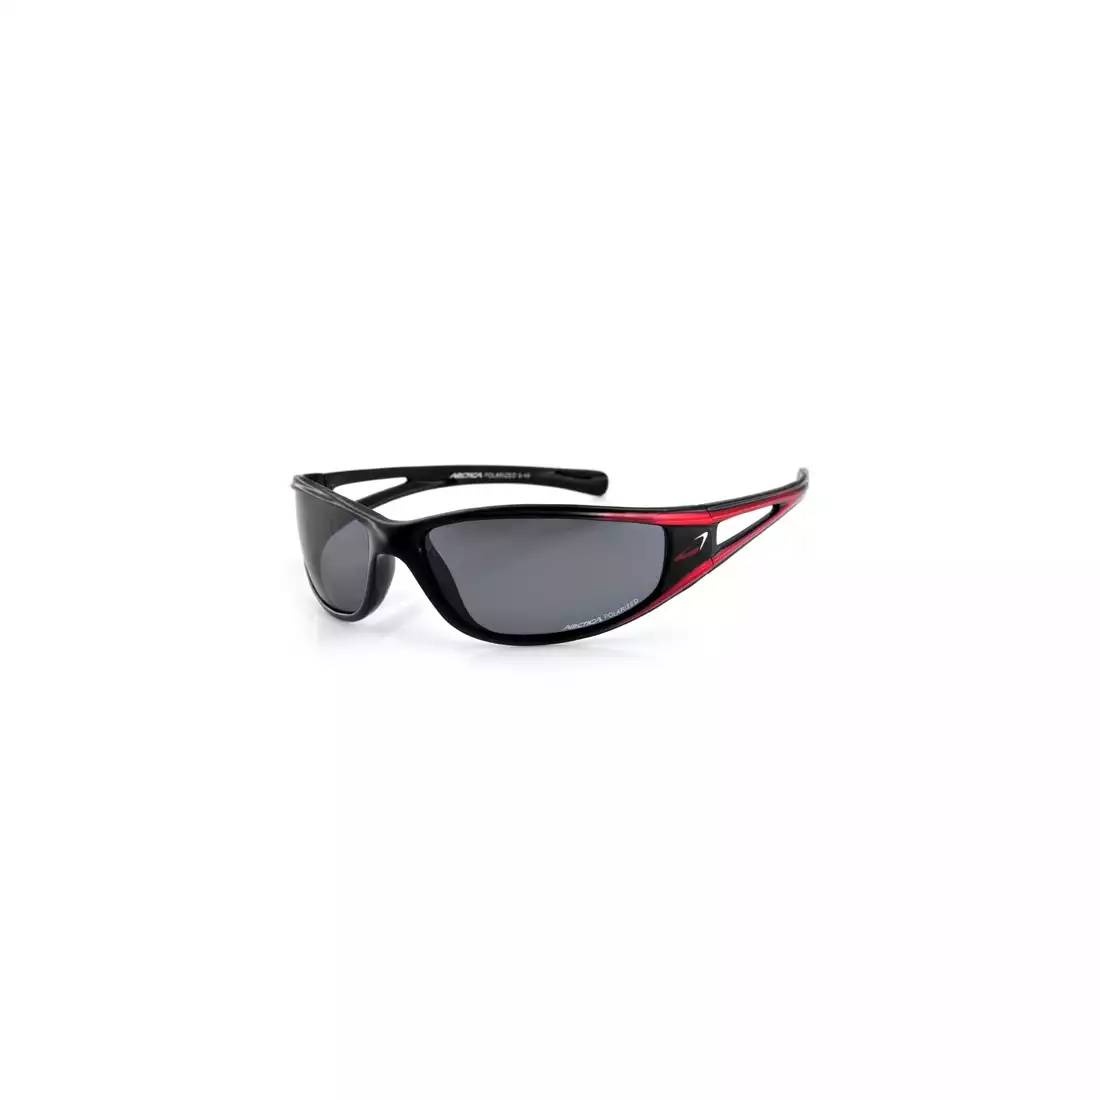 ARCTICA okulary sportowe S-49 - kolor: Czarno-czerwony